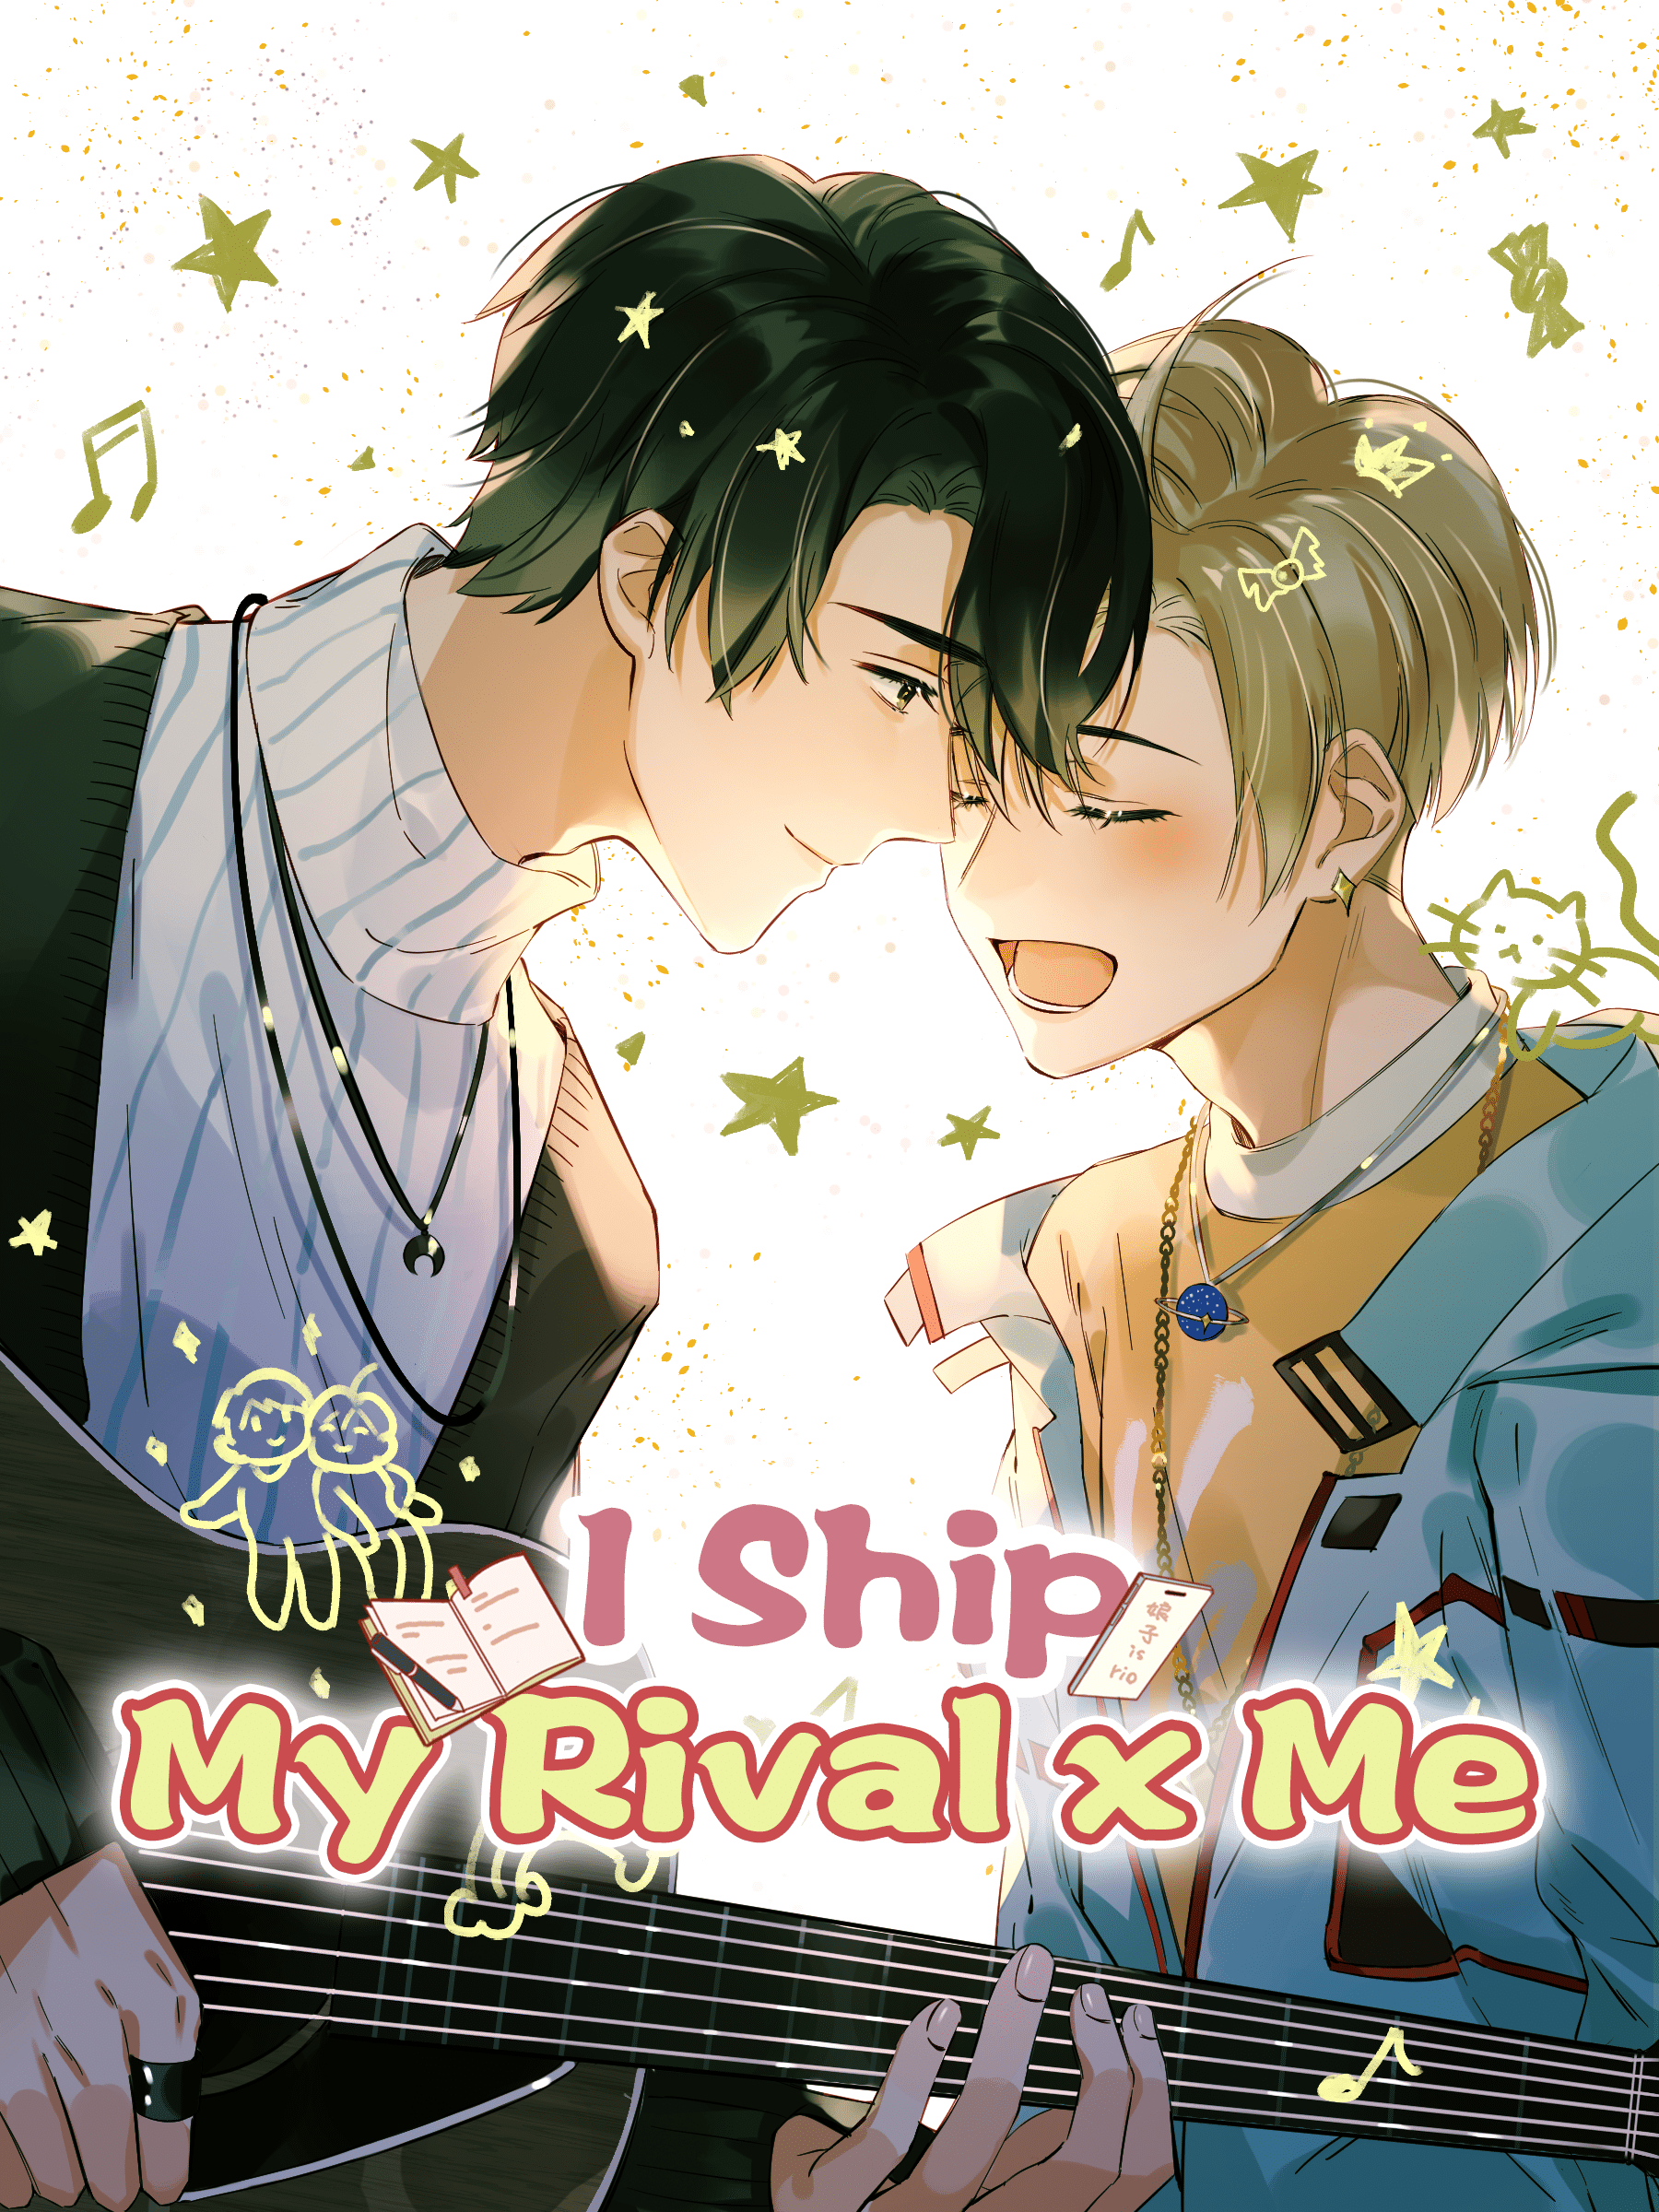 I Ship My Rival x Me – ปฏิบัติการเปลี่ยนคู่แข่งมาเป็นคู่จิ้น ตอนที่ 2